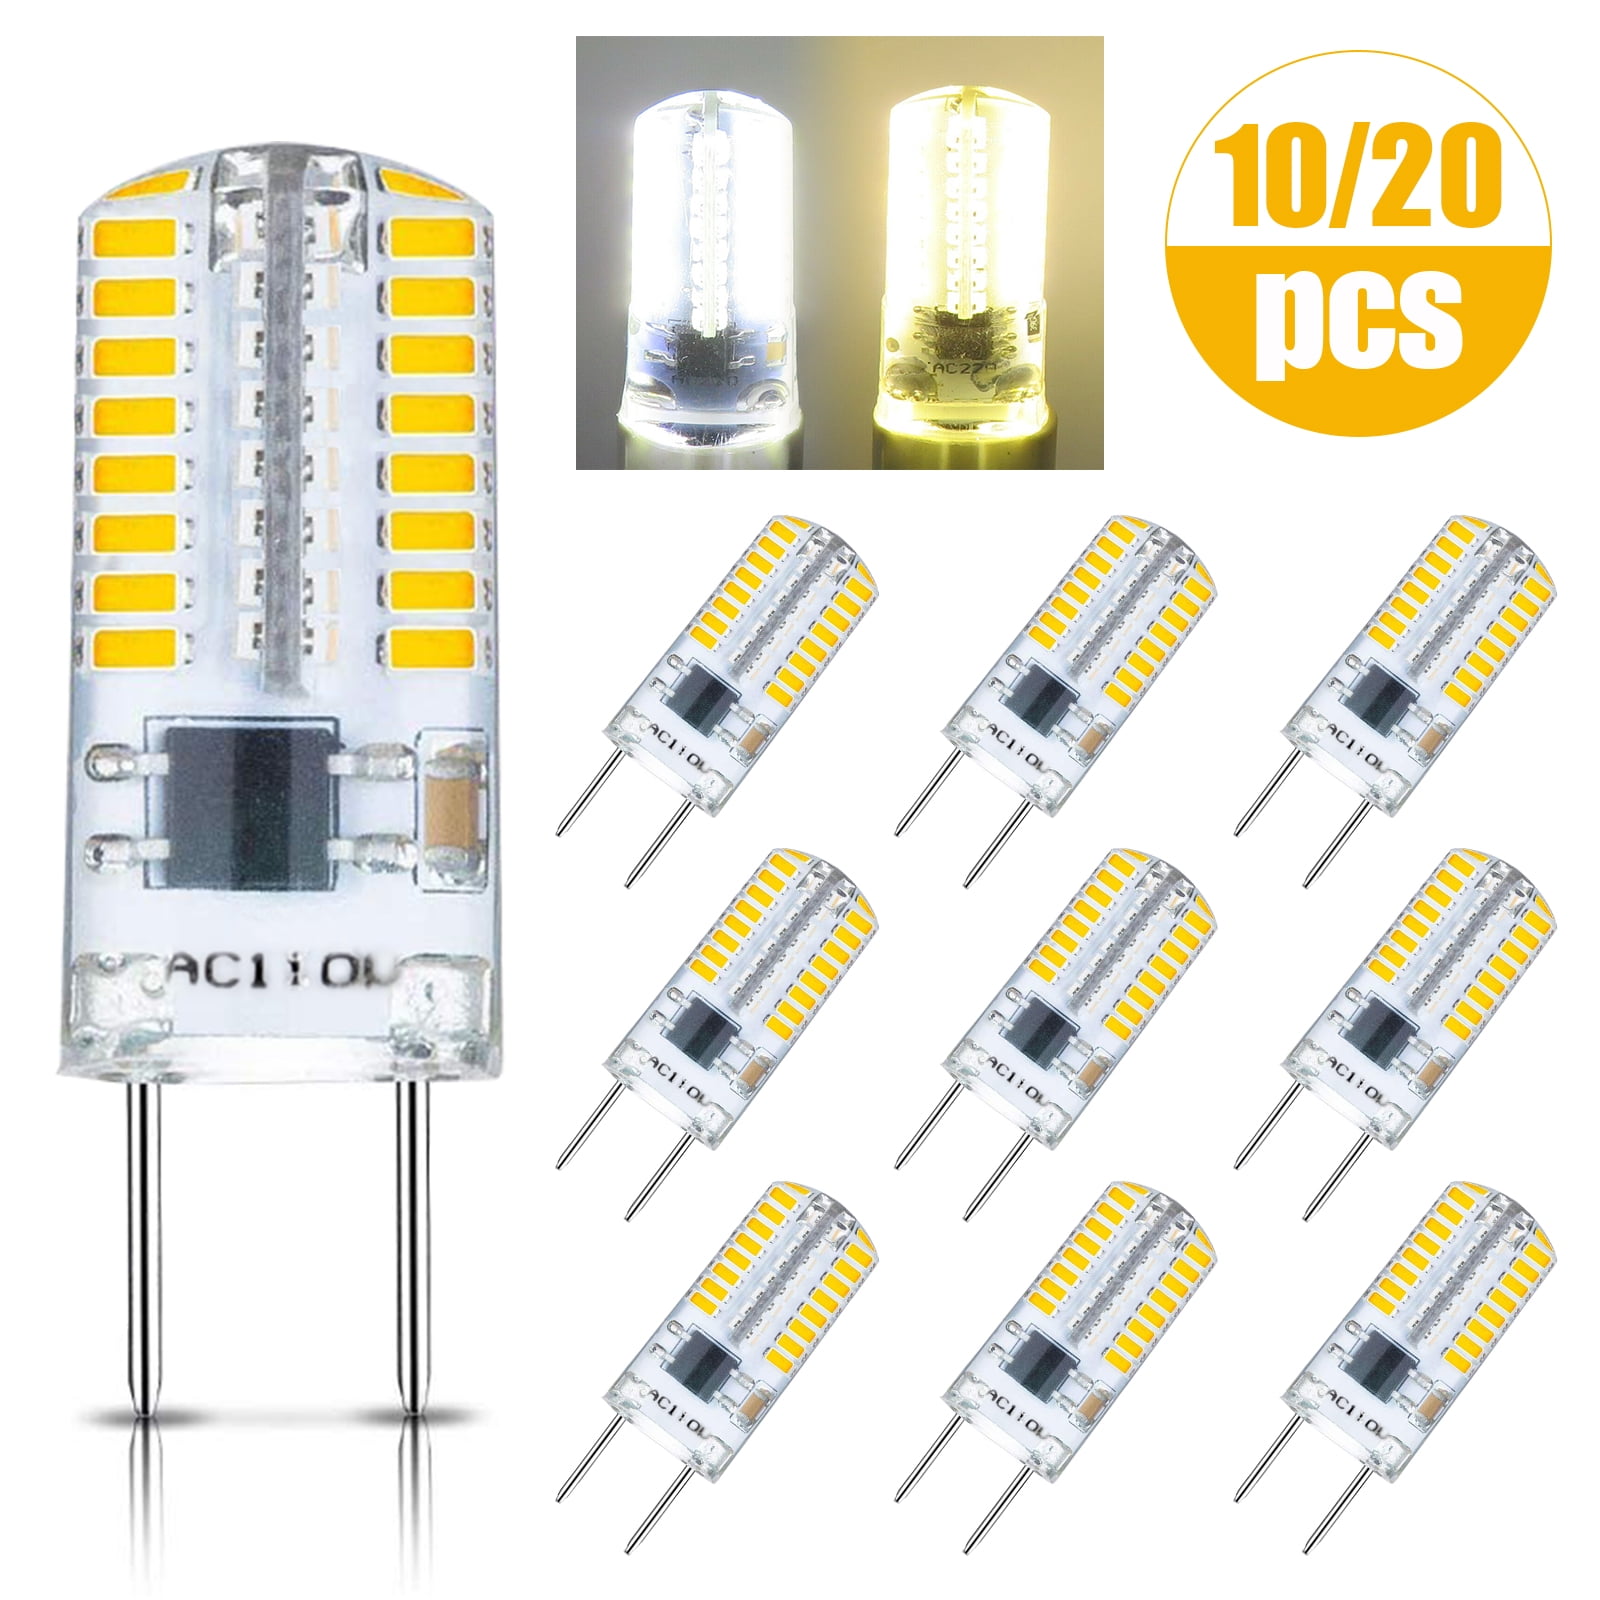 Eeekit Dimmable G8 Led Light Bulbs 20 10pcs 110v 2 5w White 6500k